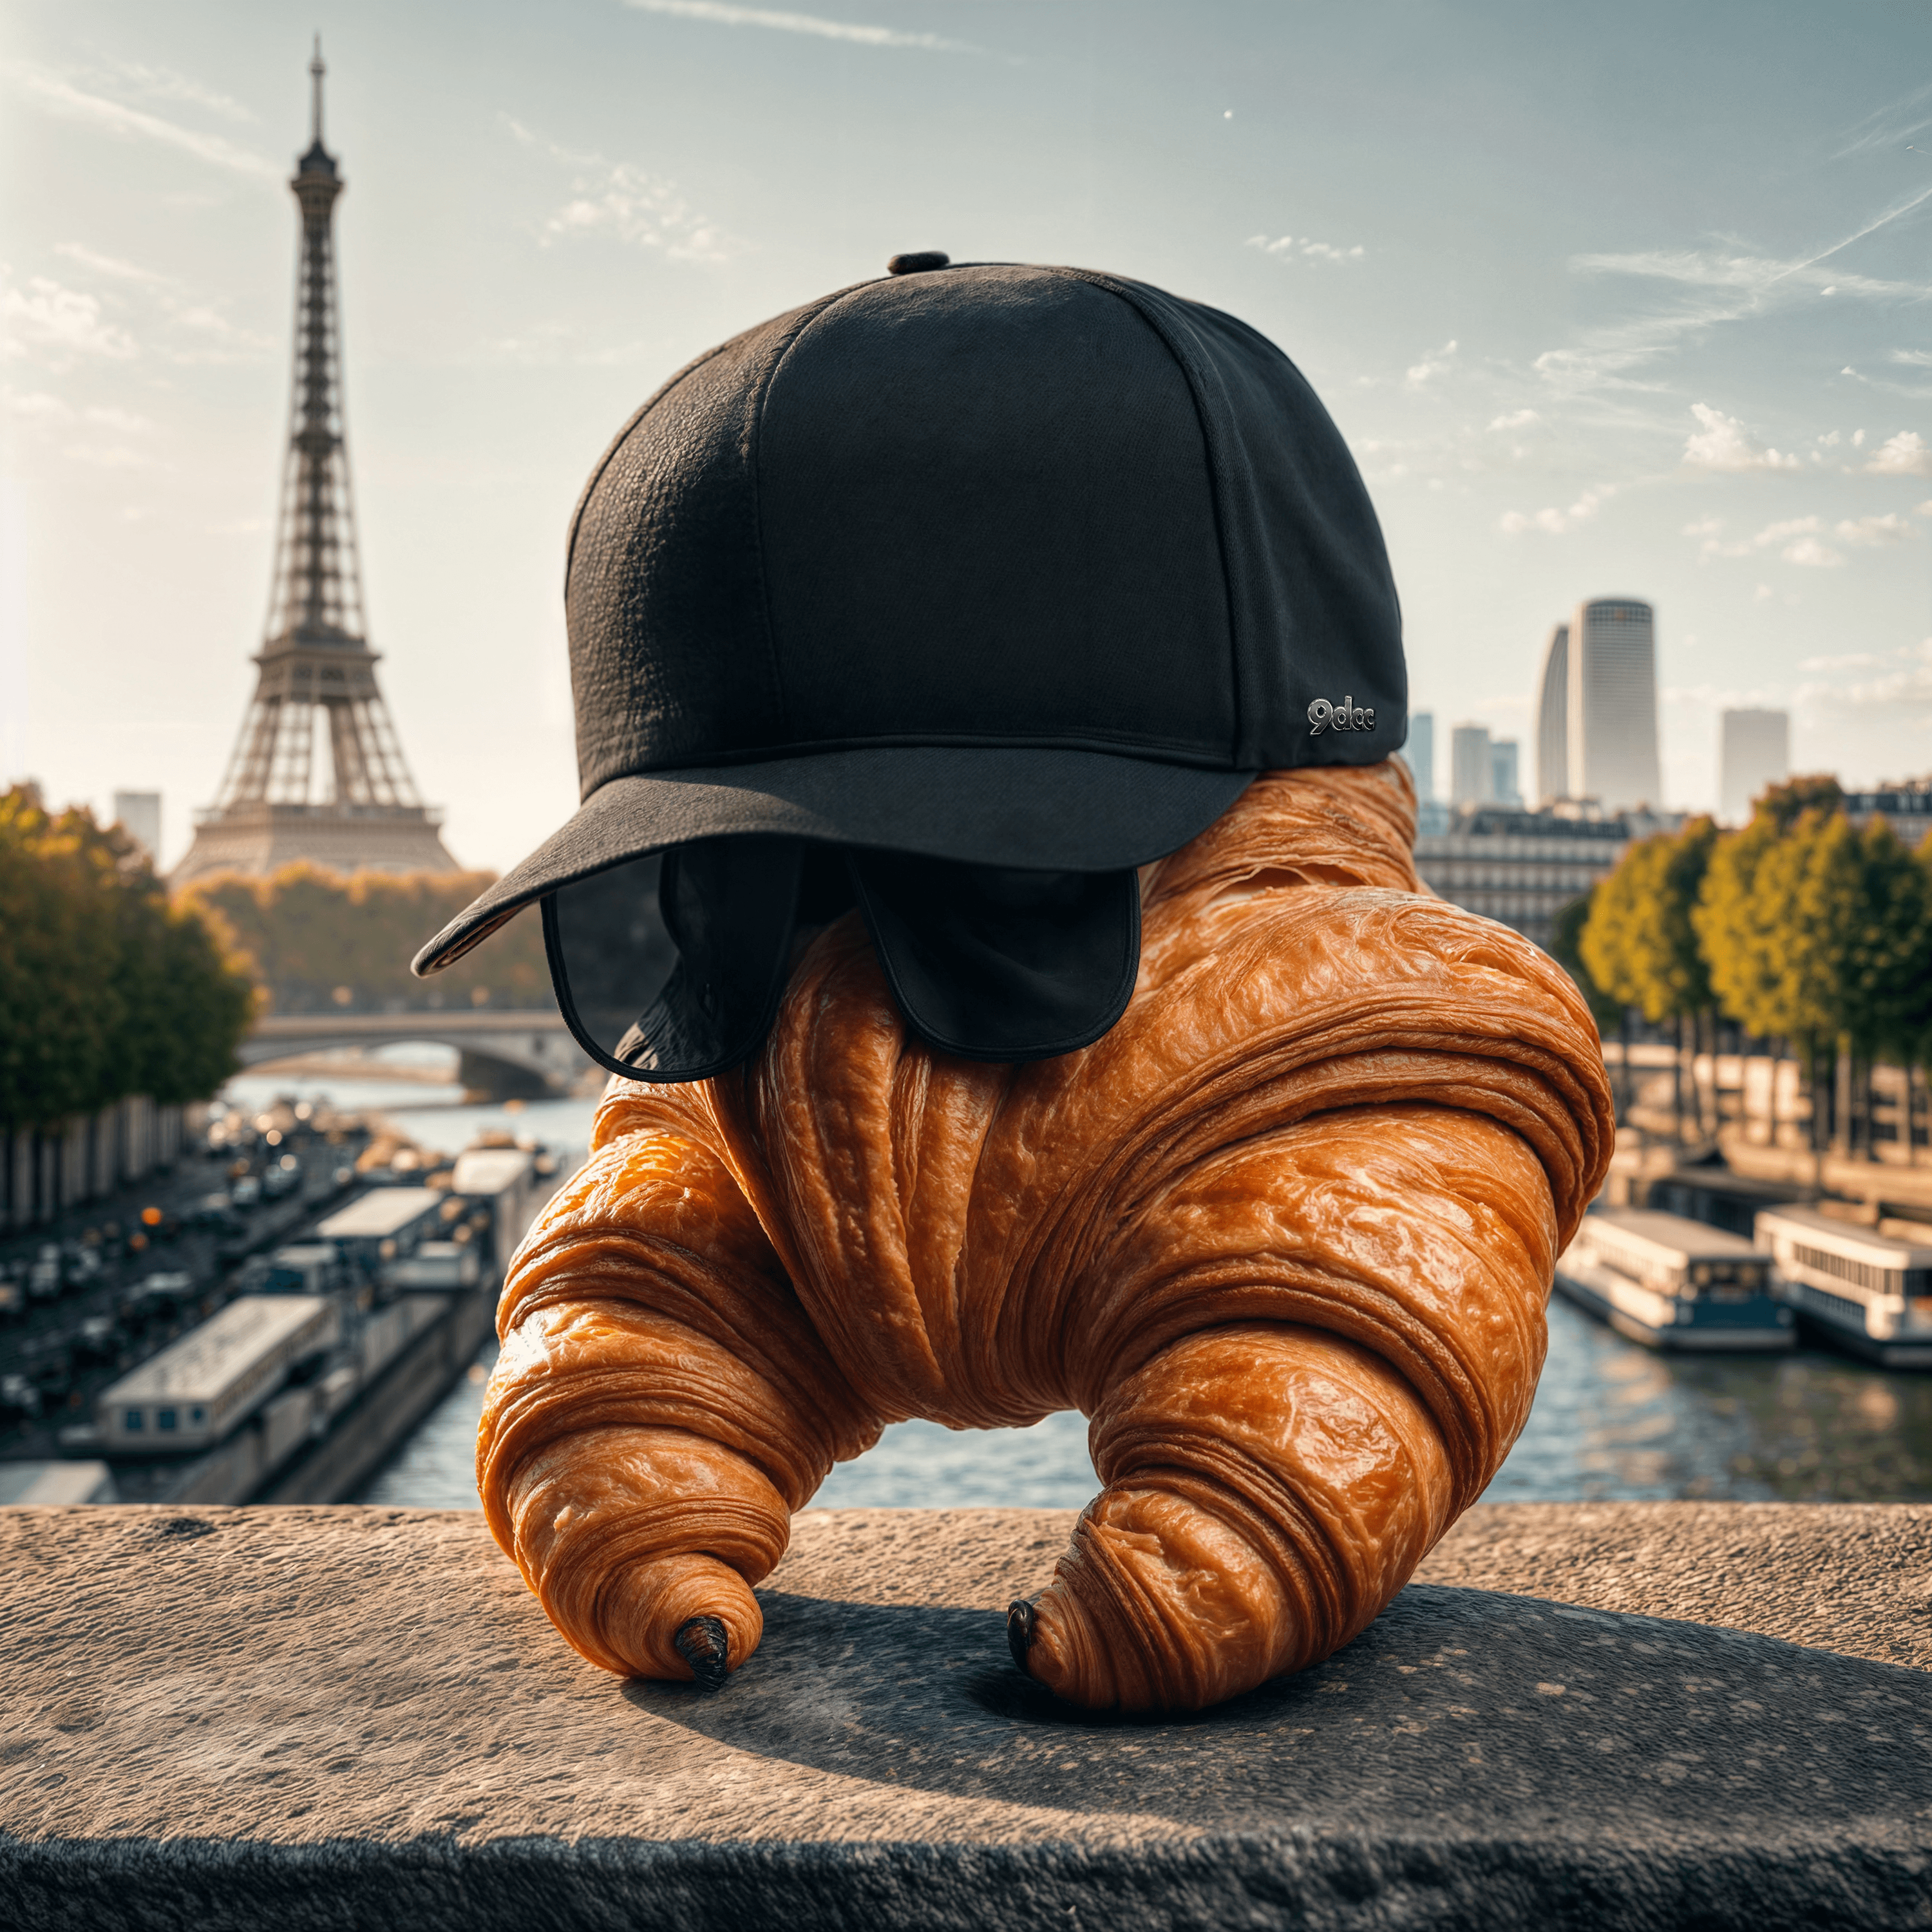 Croissants in Paris